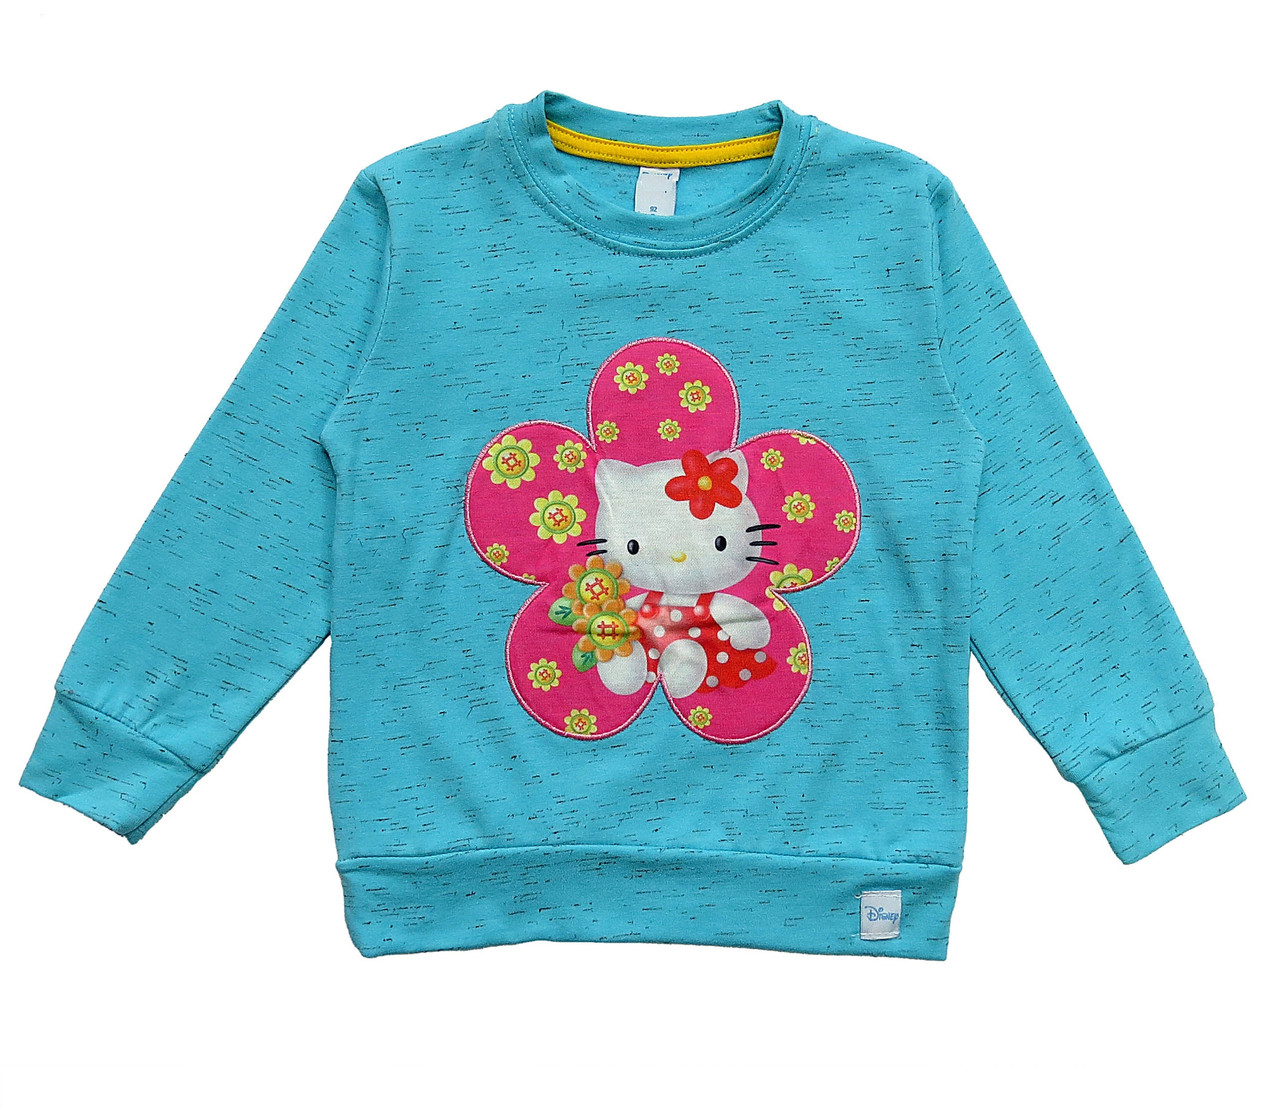 

Утепленный свитшот Hello Kitty Kids collection для девочки 104 см Бирюзовый 11254